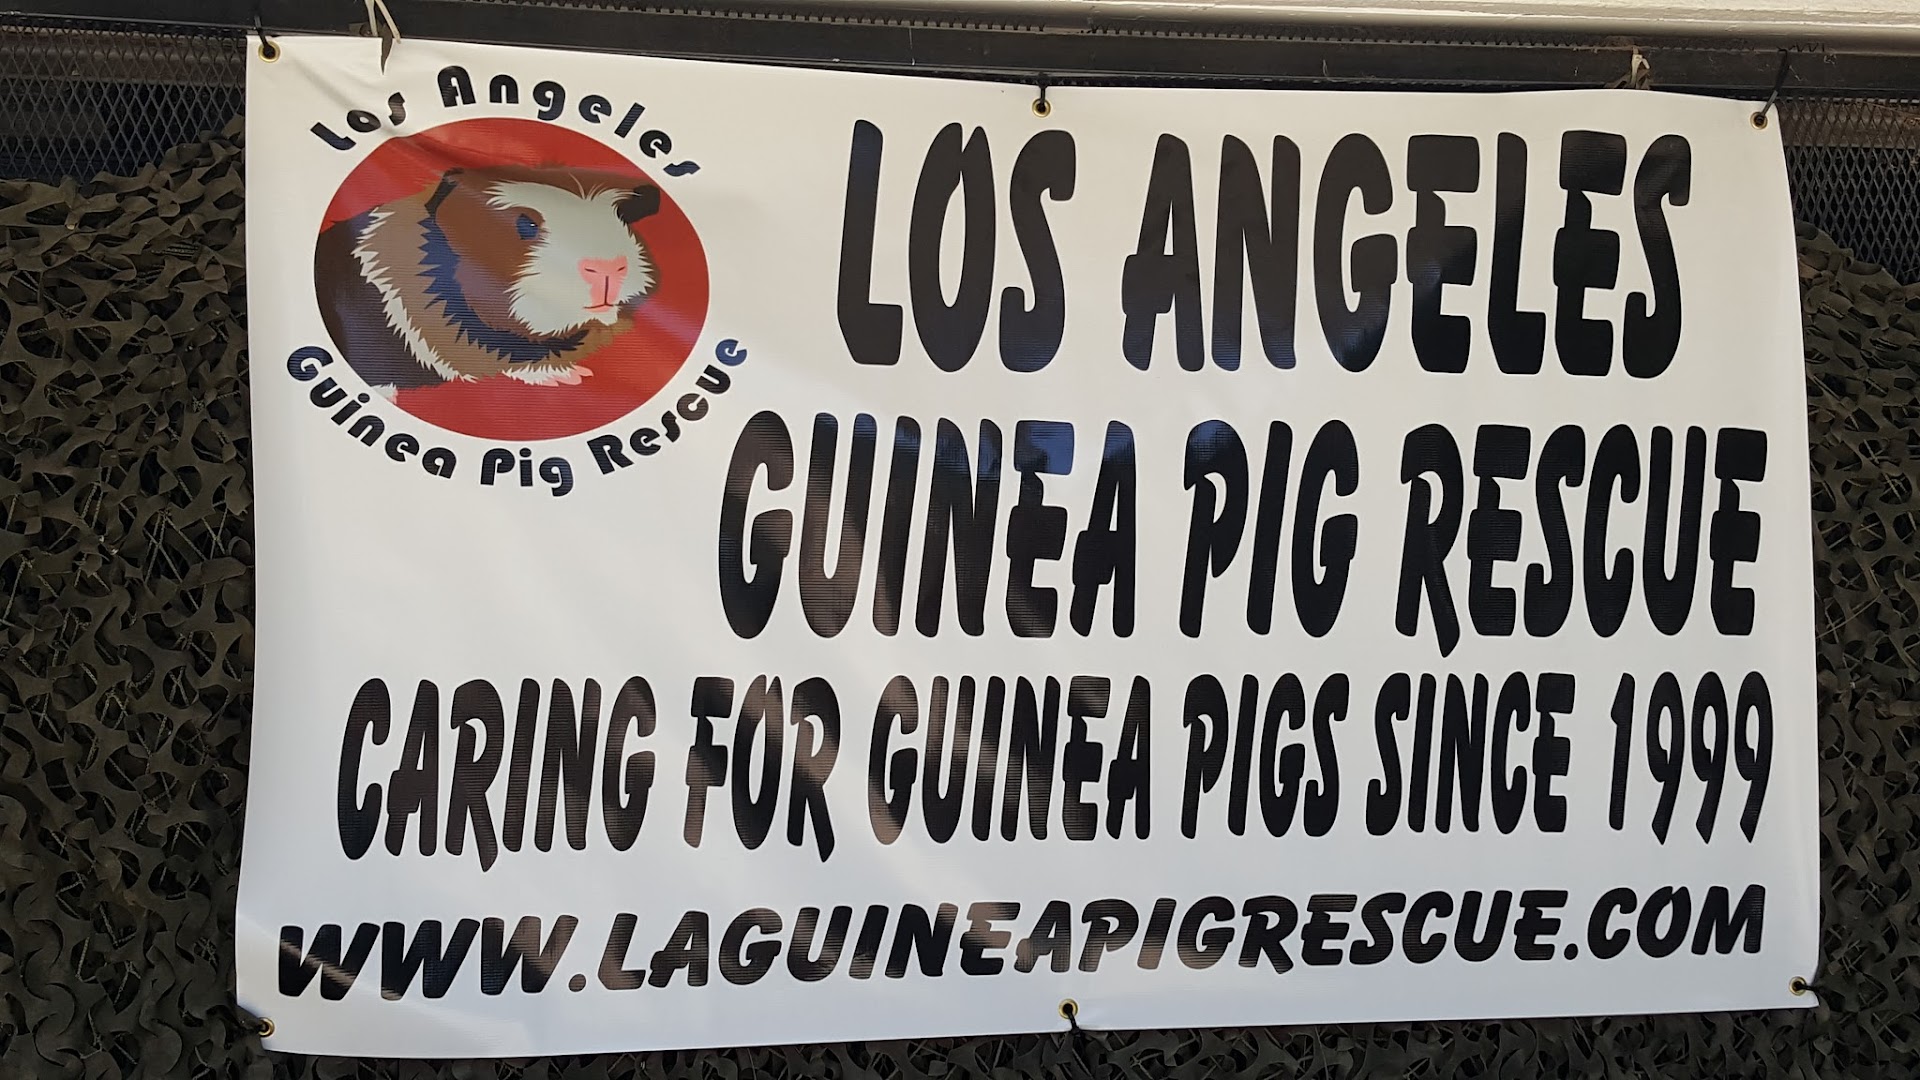 LA Guinea Pig Rescue